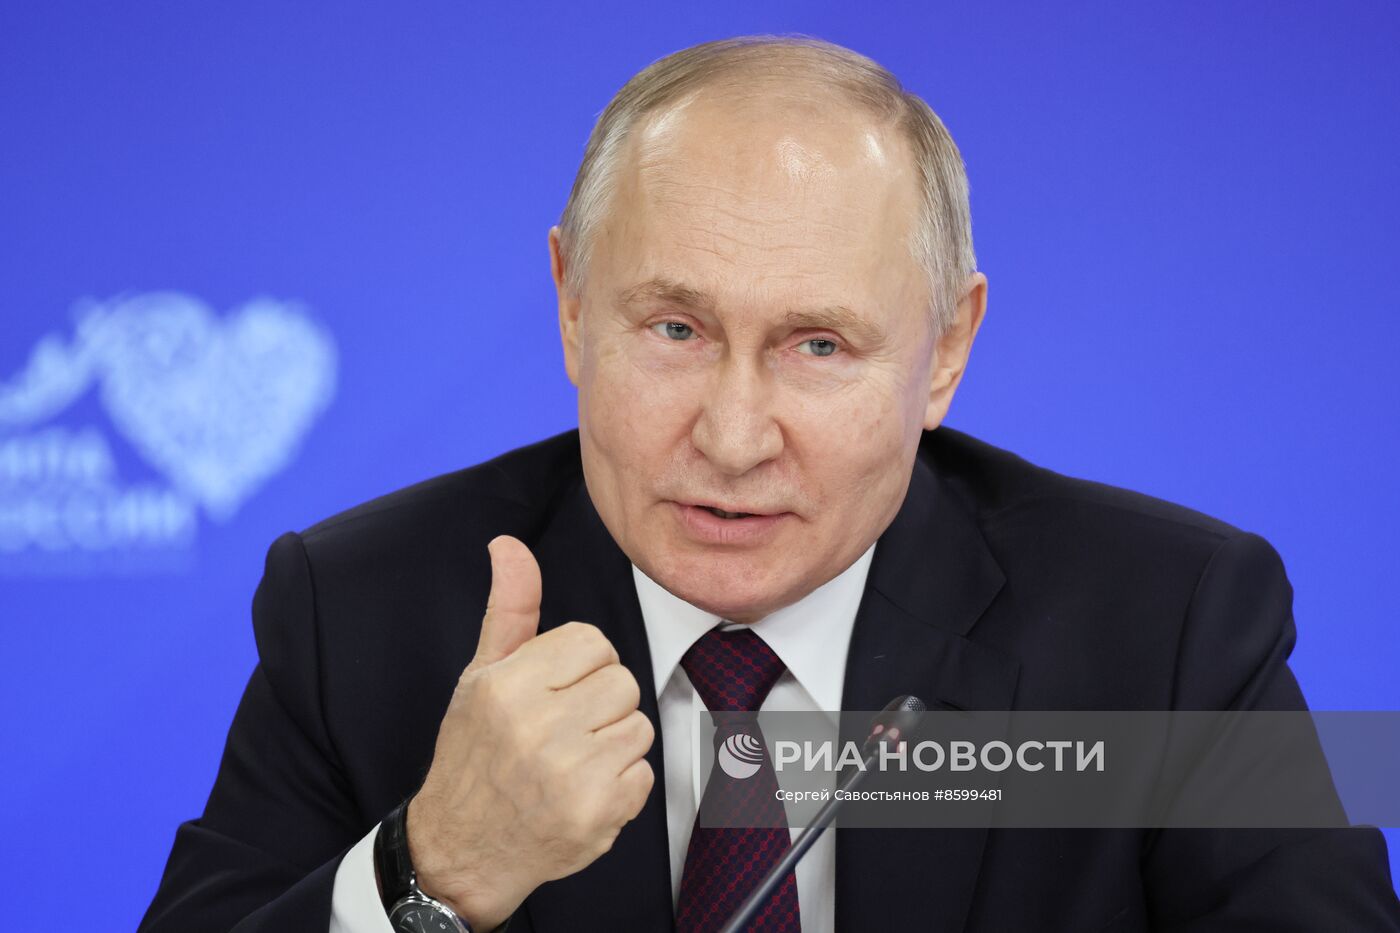 Президент РФ В. Путин провел встречу с главами муниципальных образований субъектов России